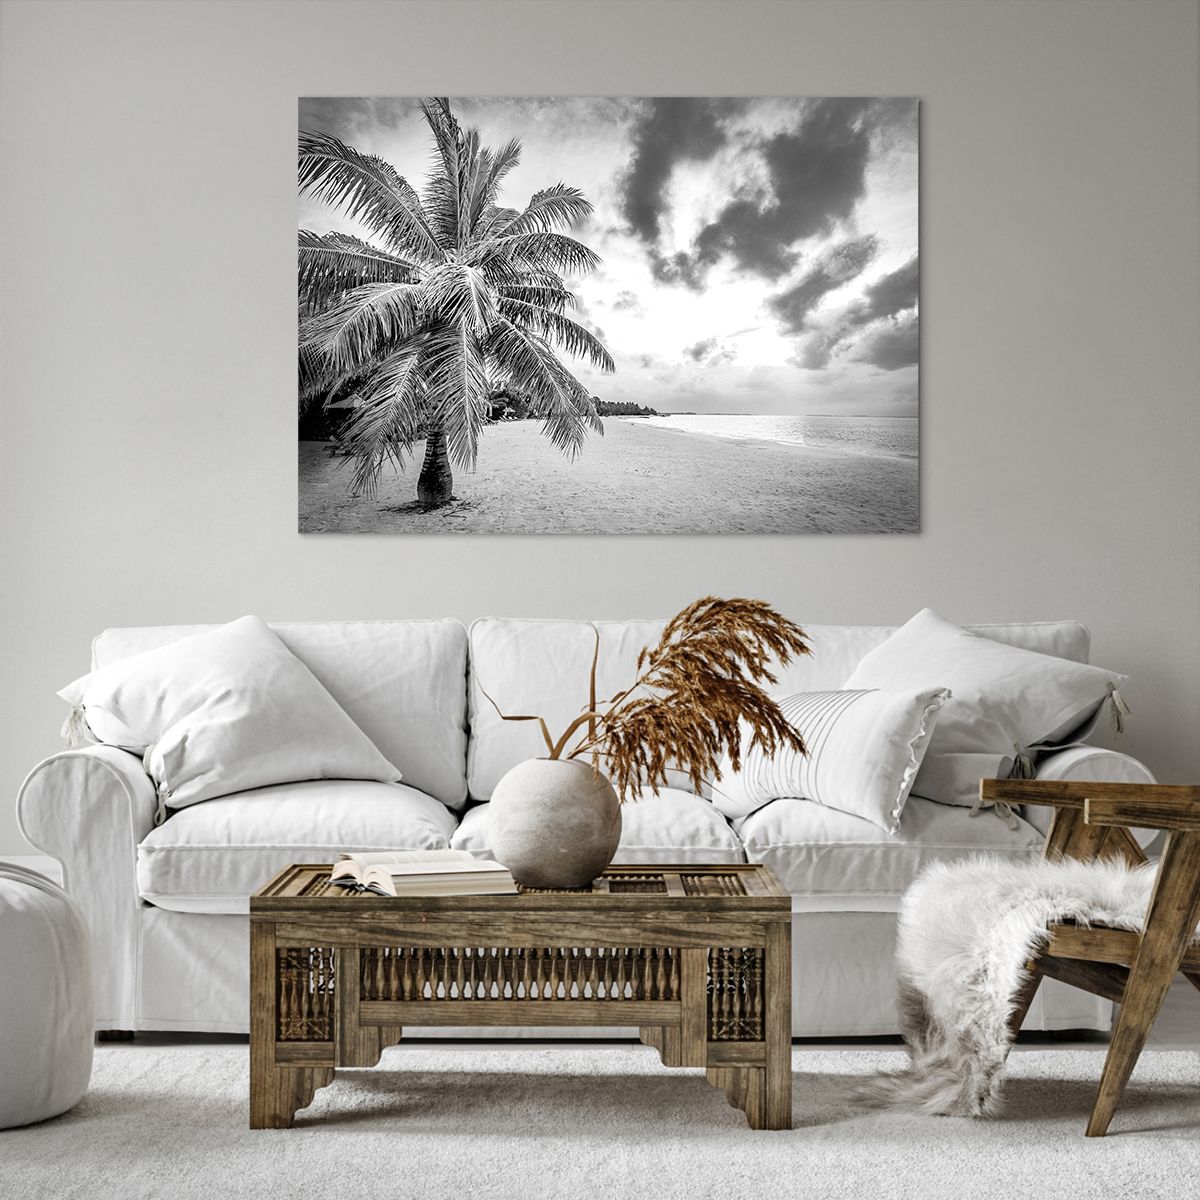 Quadro su tela Paesaggio, Quadro su tela Spiaggia, Quadro su tela Oceano, Quadro su tela Natura, Quadro su tela Palma Da Cocco